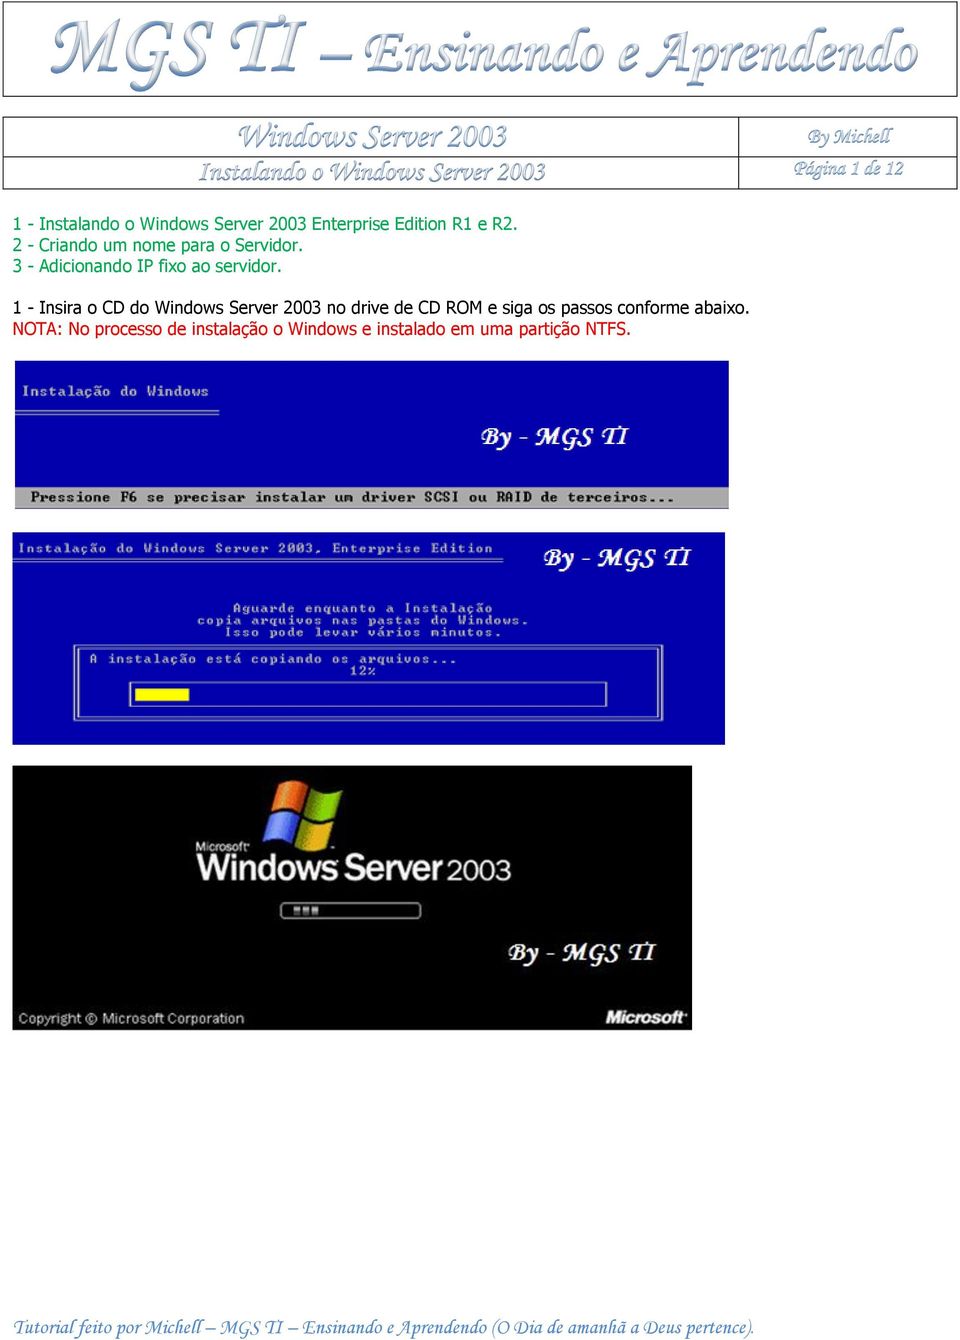 1 - Insira o CD do Windows Server 2003 no drive de CD ROM e siga os passos